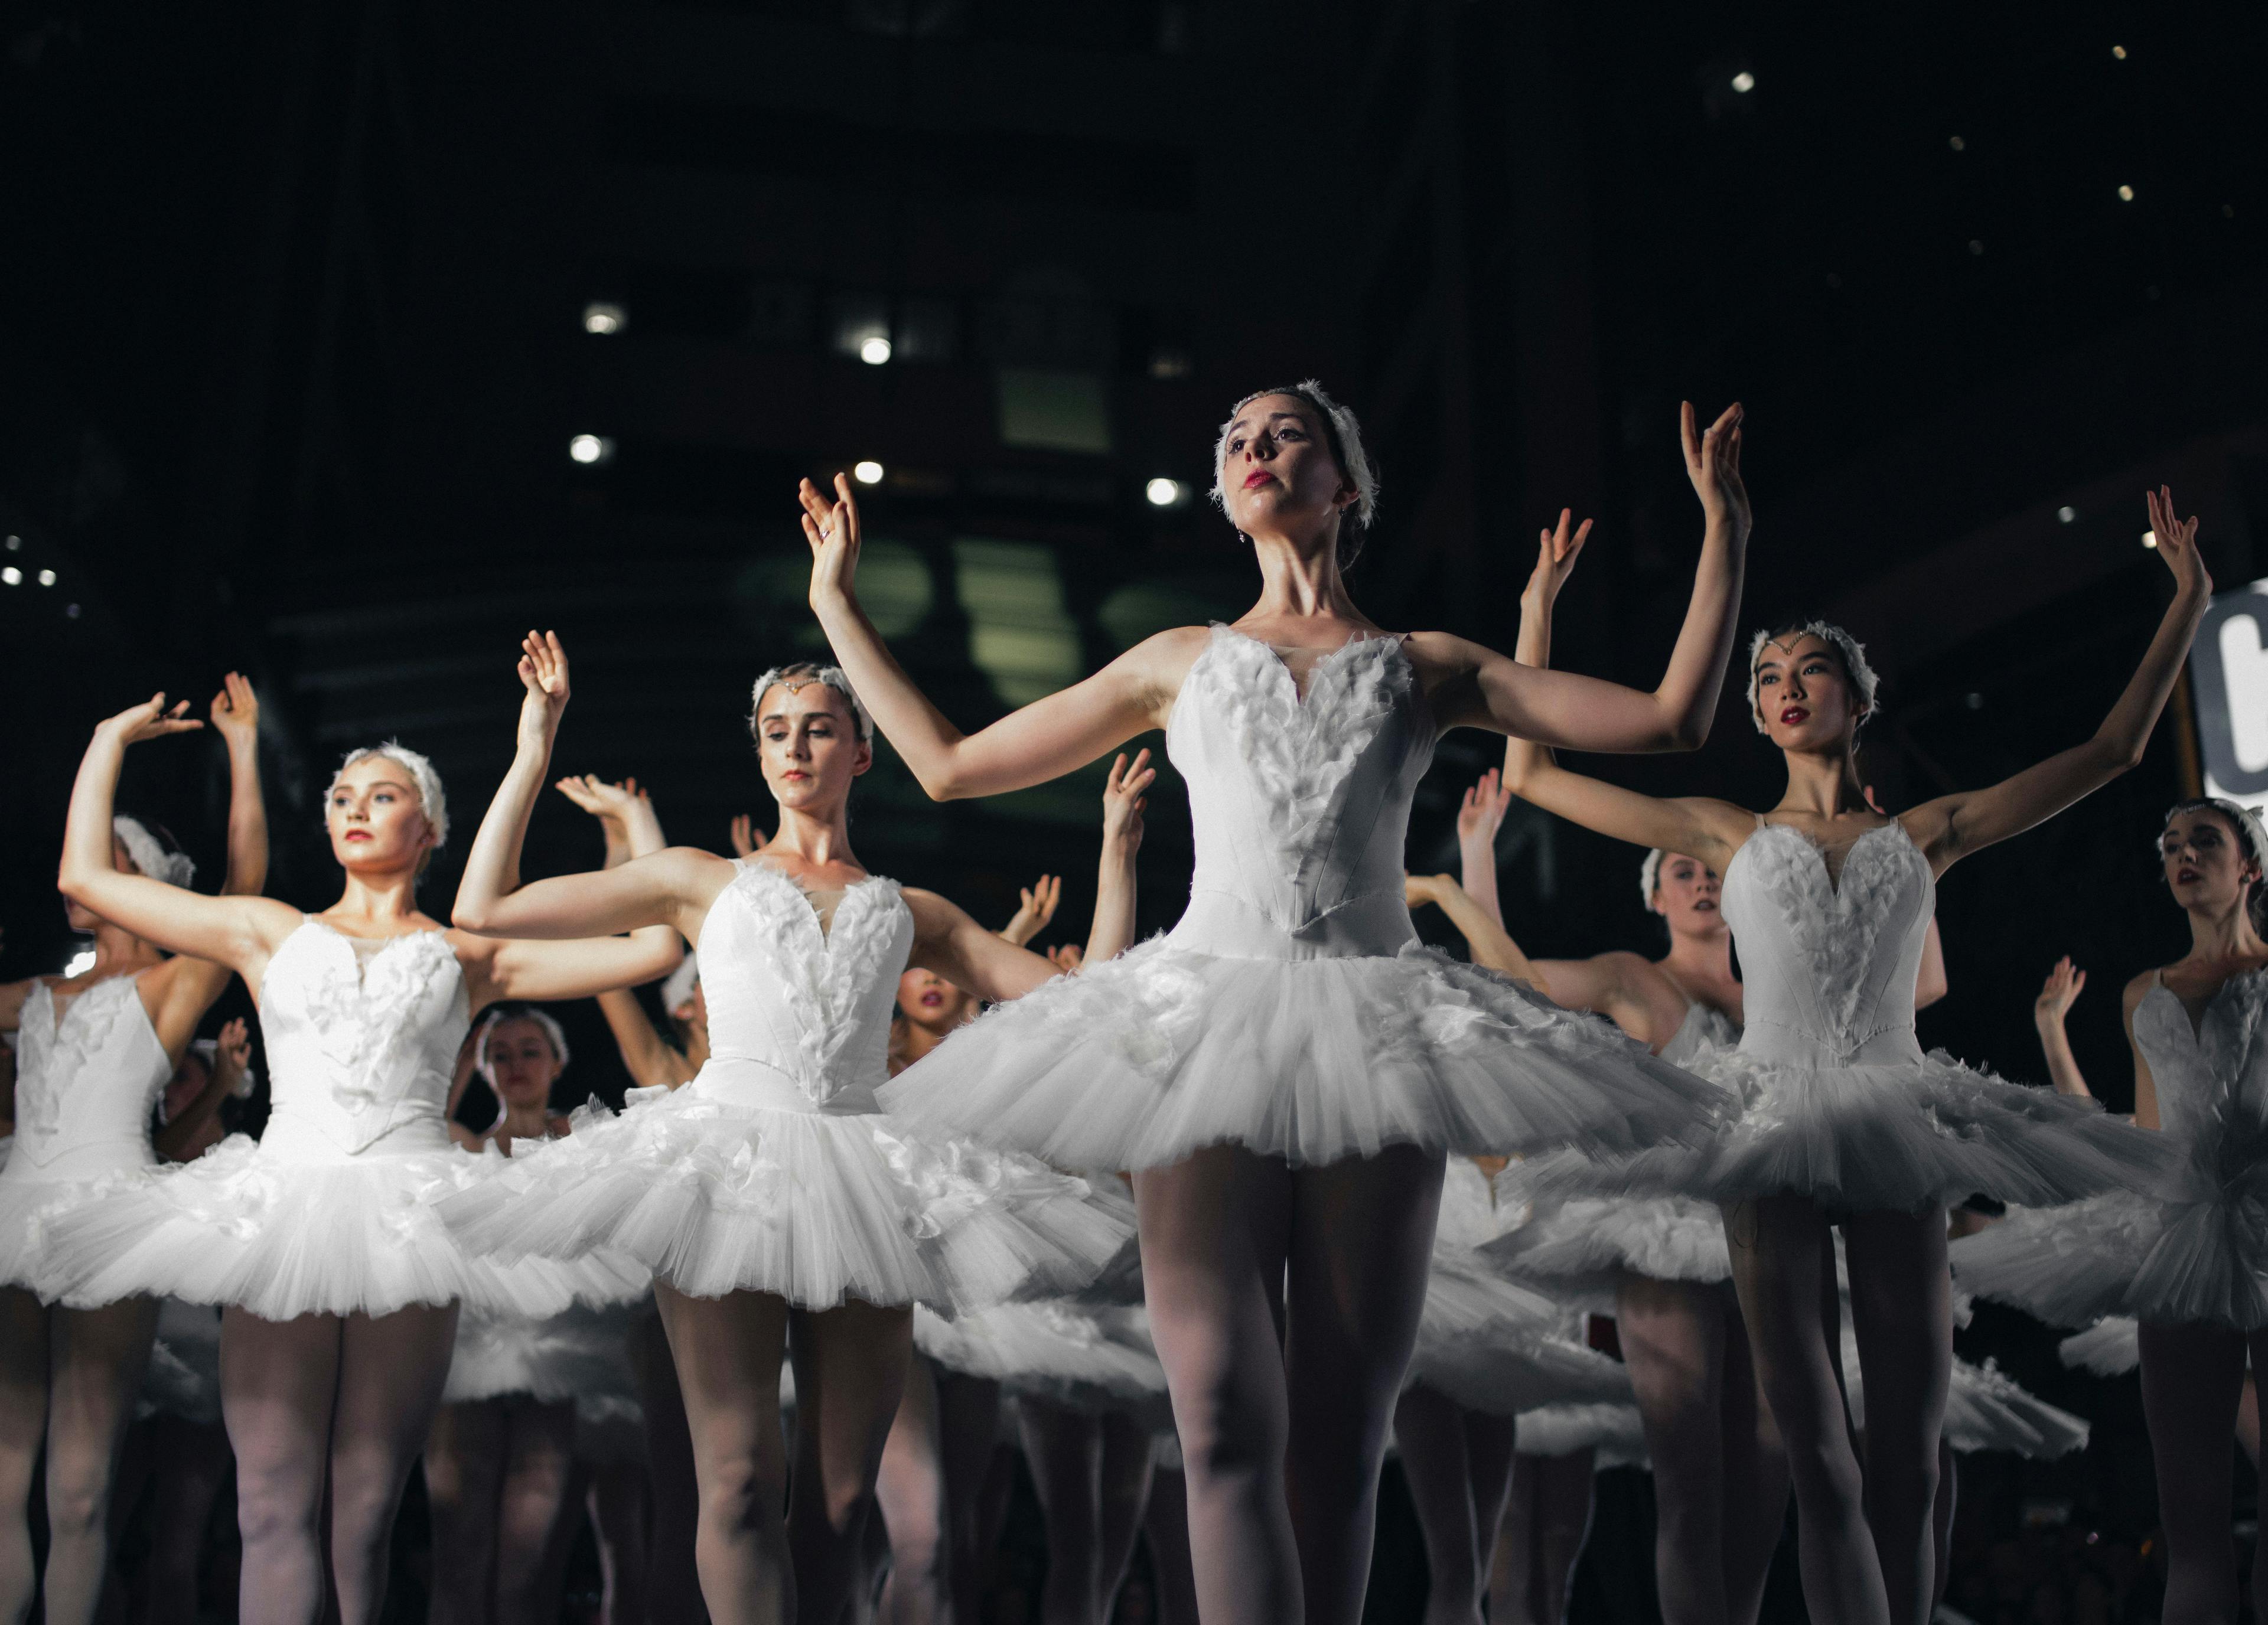 Gala des Étoiles в Люксембурге — что нужно знать о балете